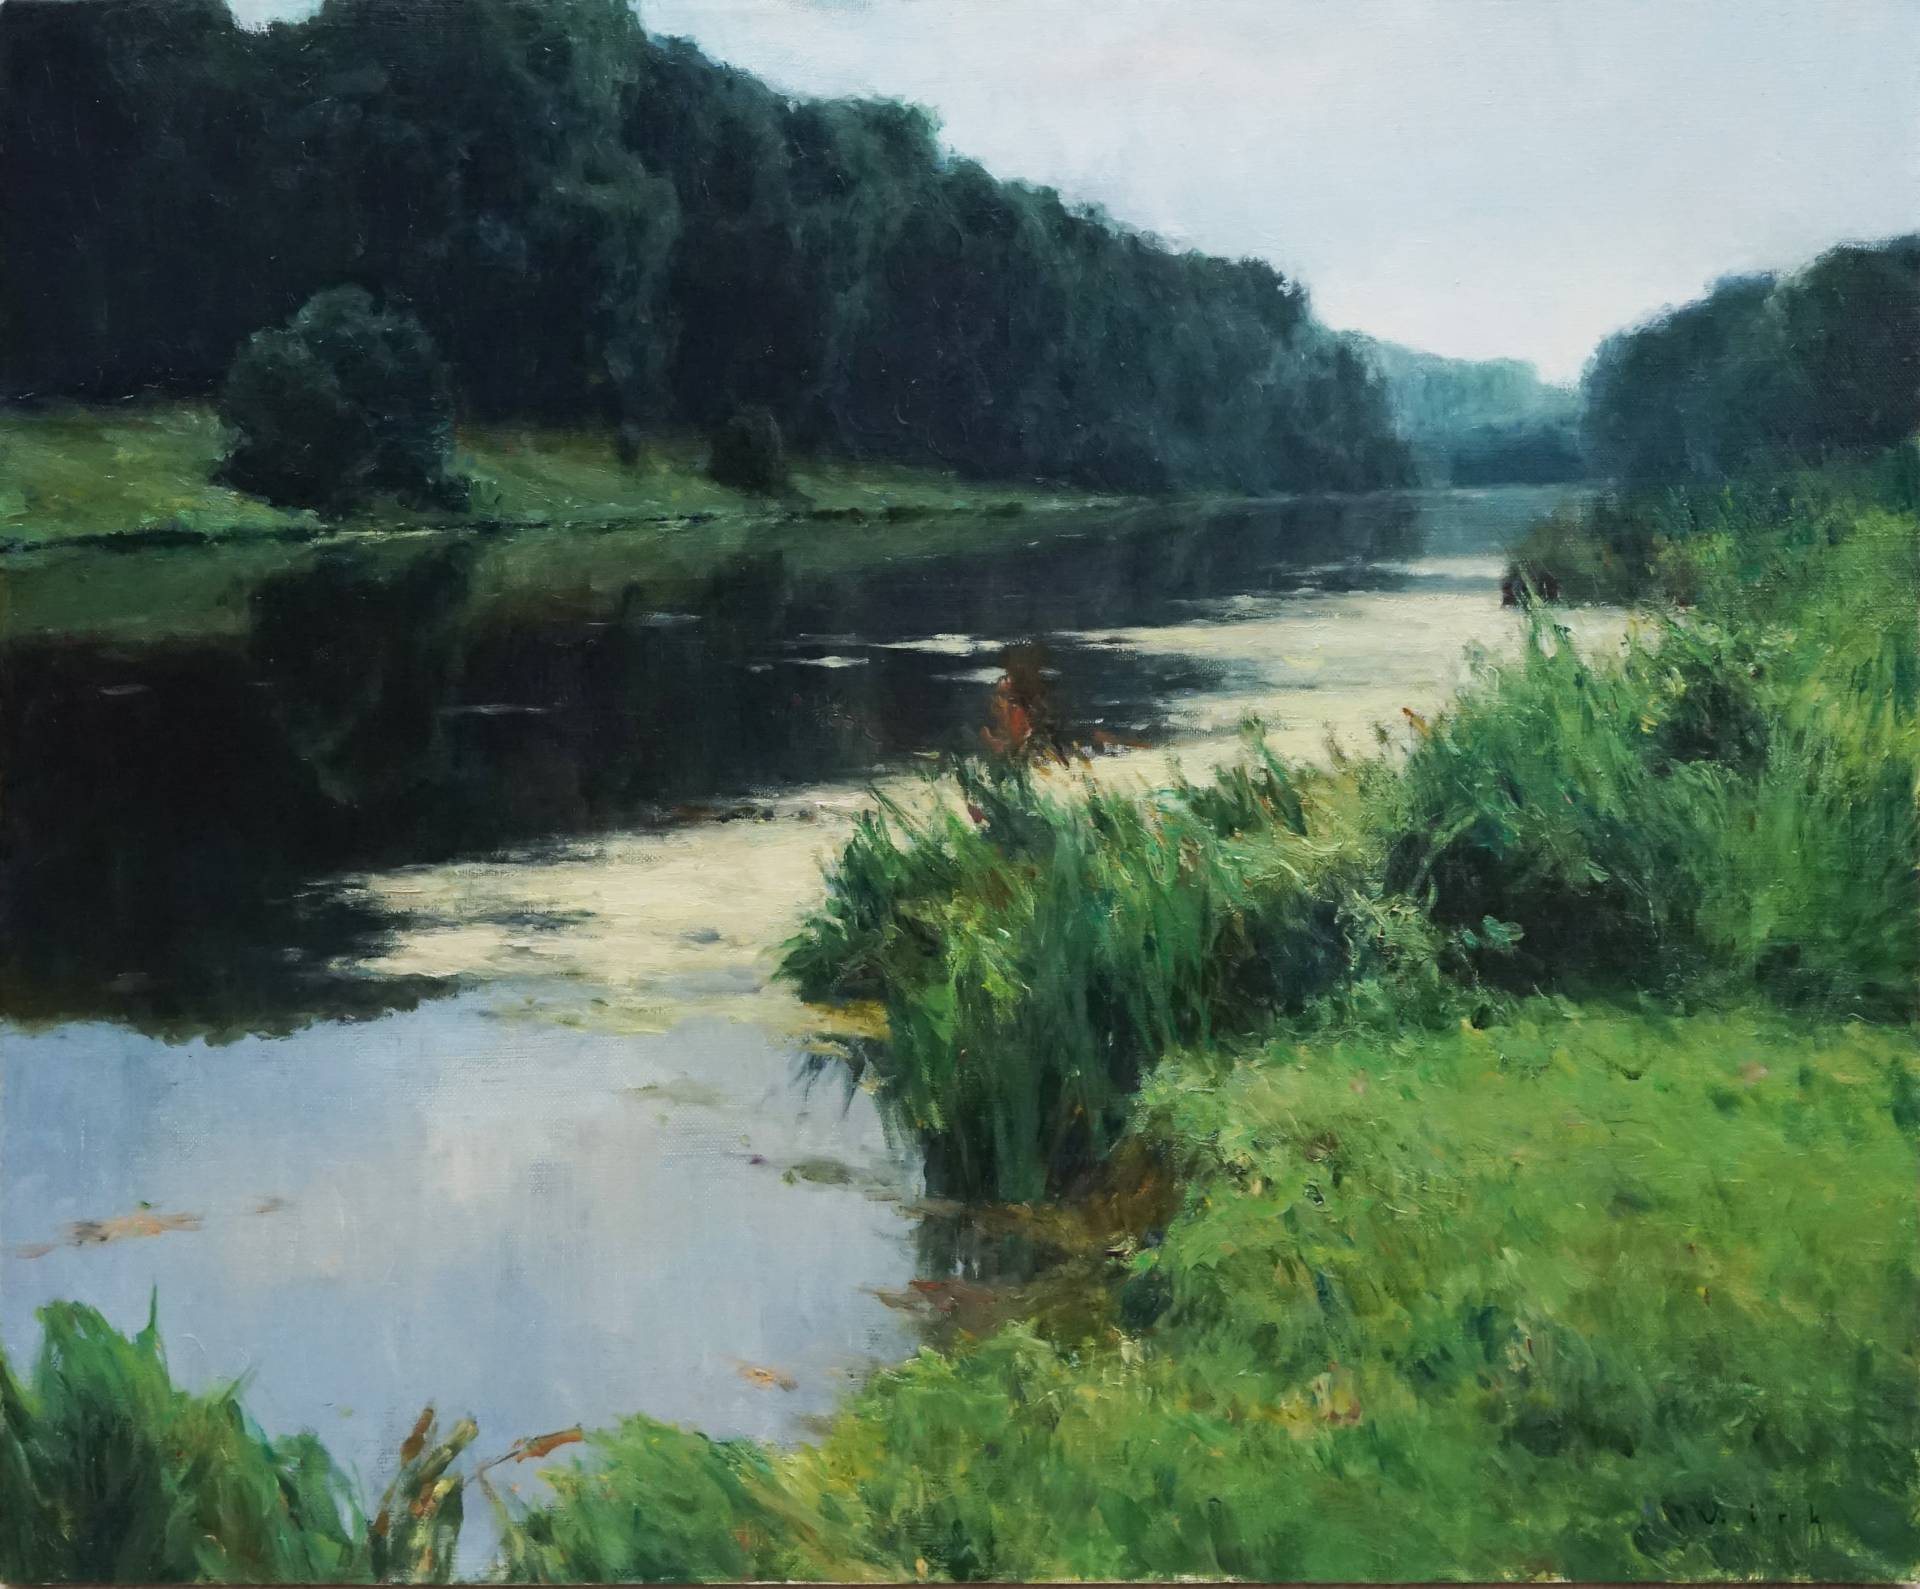 Music of silence - 1, Vladimir Kirillov, Buy the painting Oil